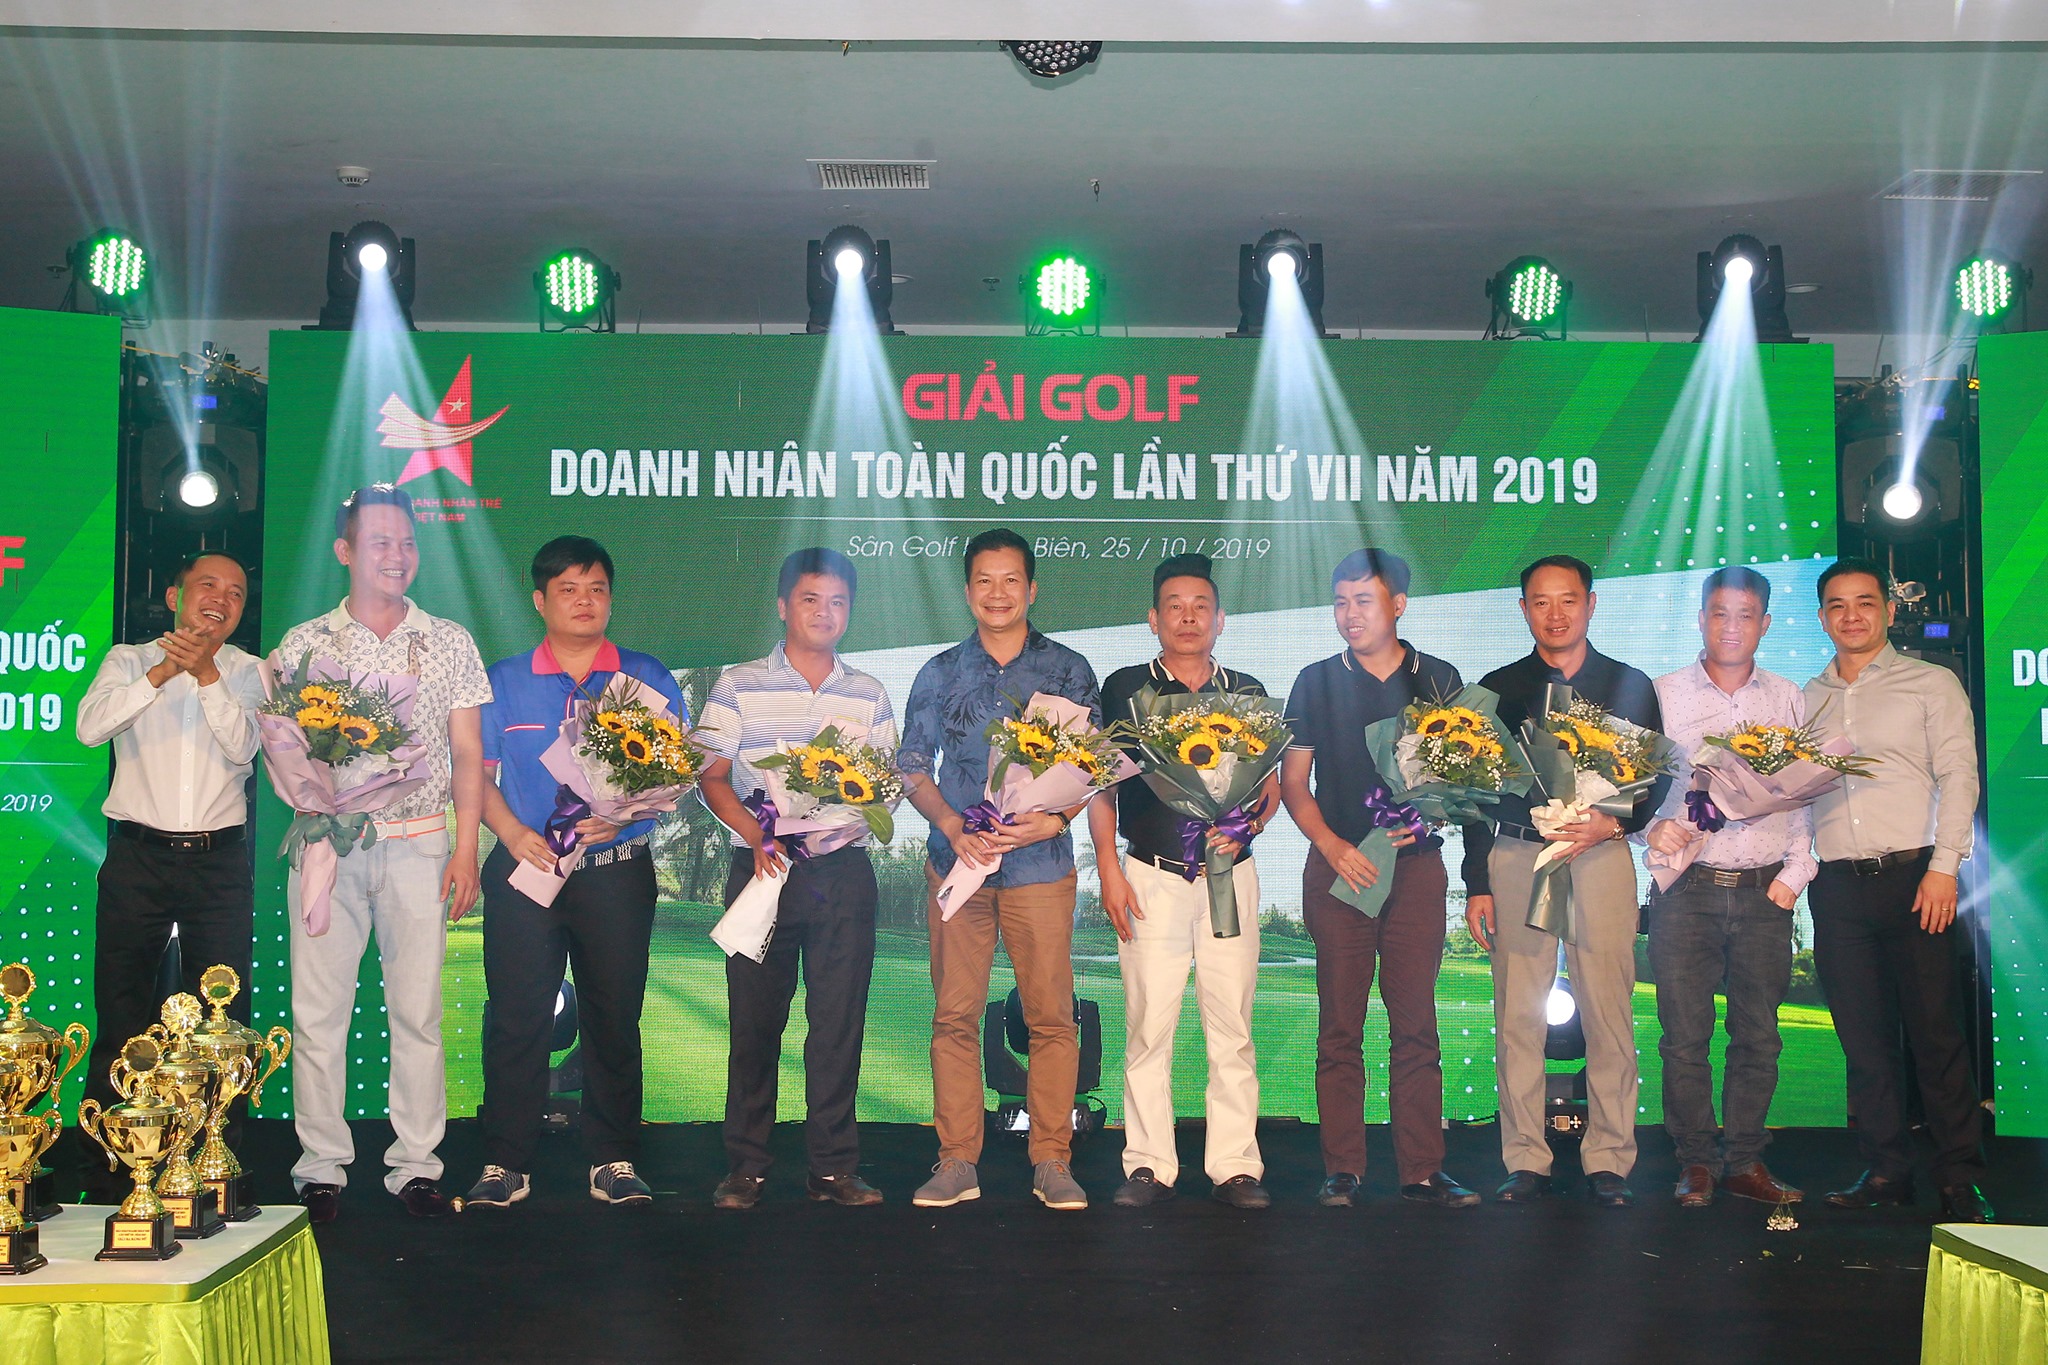 Ban tổ chức trân trọng cảm ơn các anh chị Doanh nhân trẻ, các nhà tài trợ đã đồng hành, ủng hộ và tài trợ cho giải Golf Doanh nhân trẻ Việt Nam lần thứ VII.